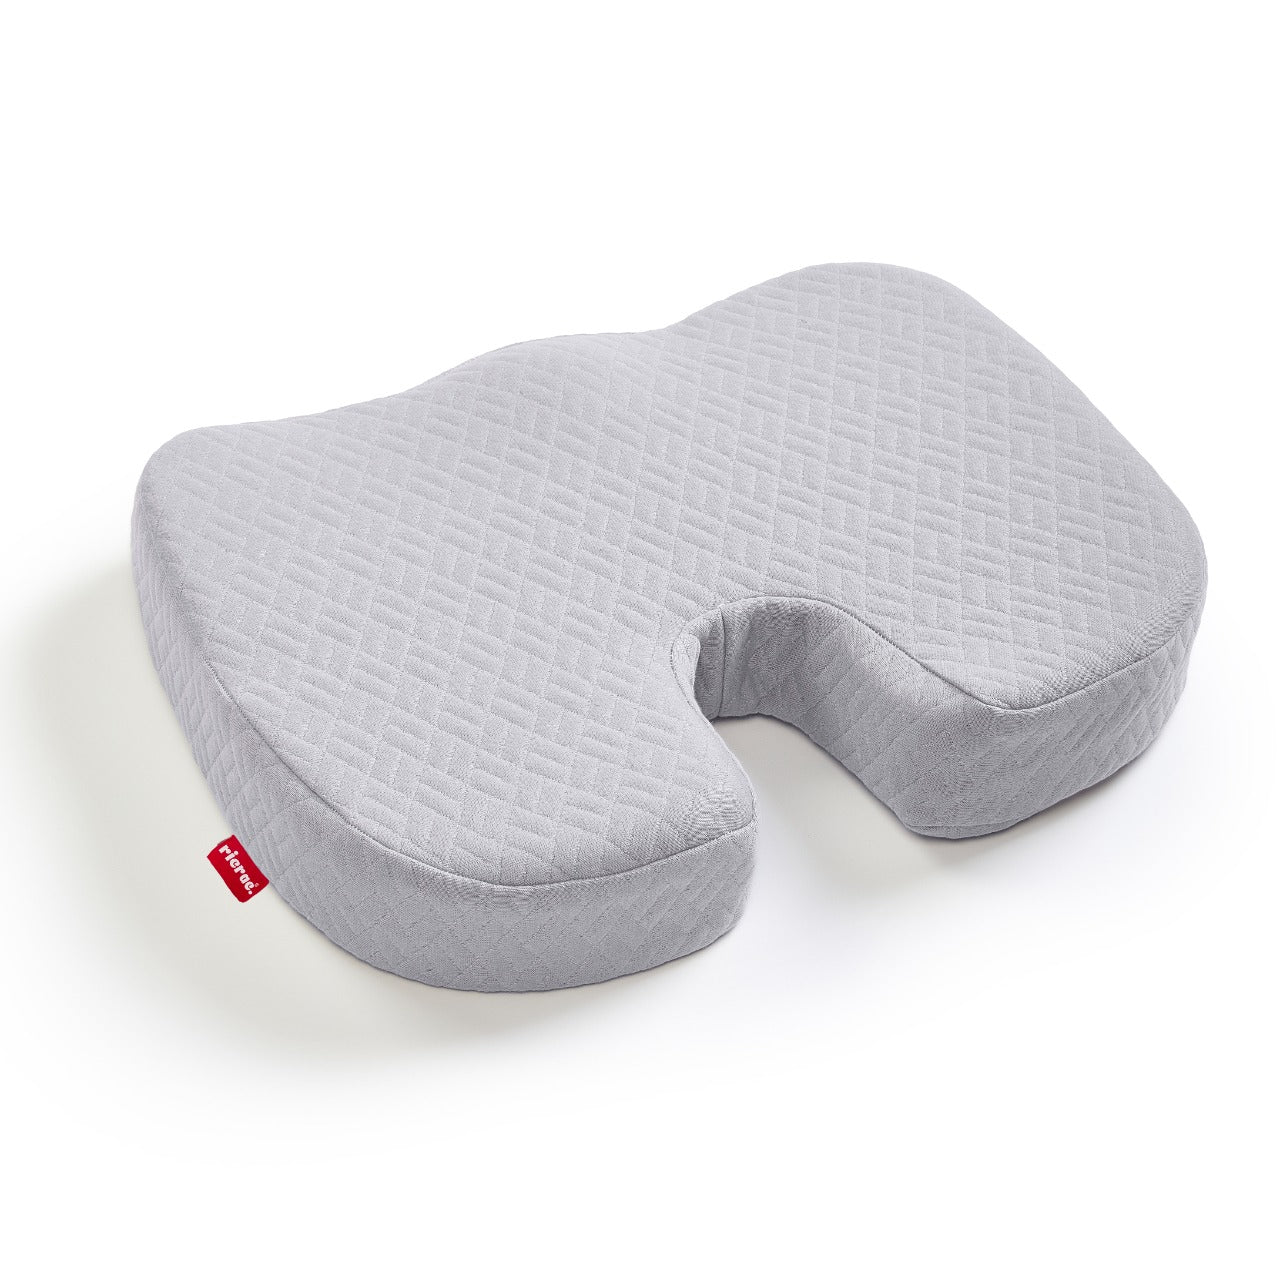 Rall- Portable Tailbone Cushion